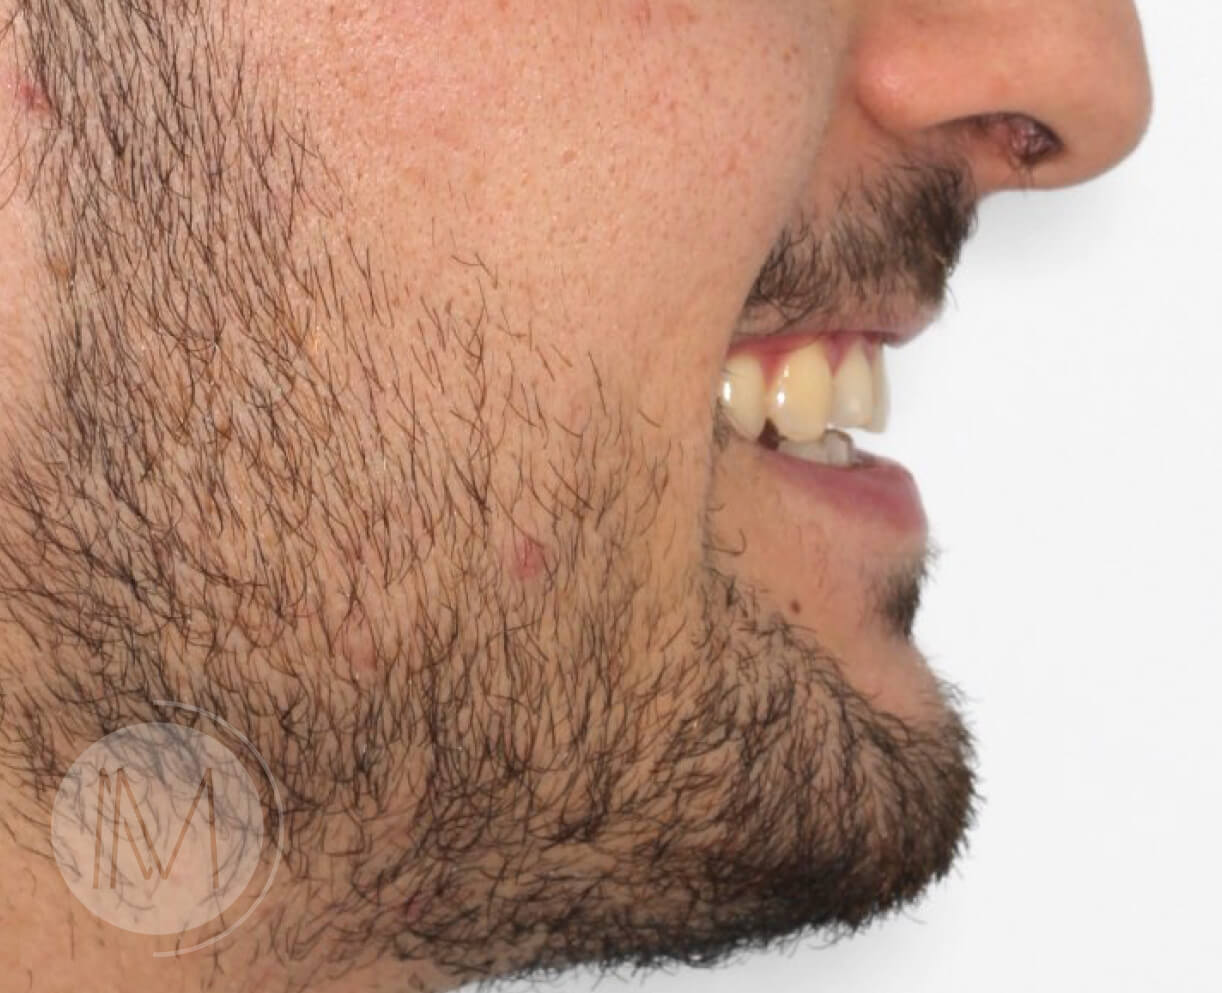 Tratamiento de ortodoncia por severos desgastes dentales 5